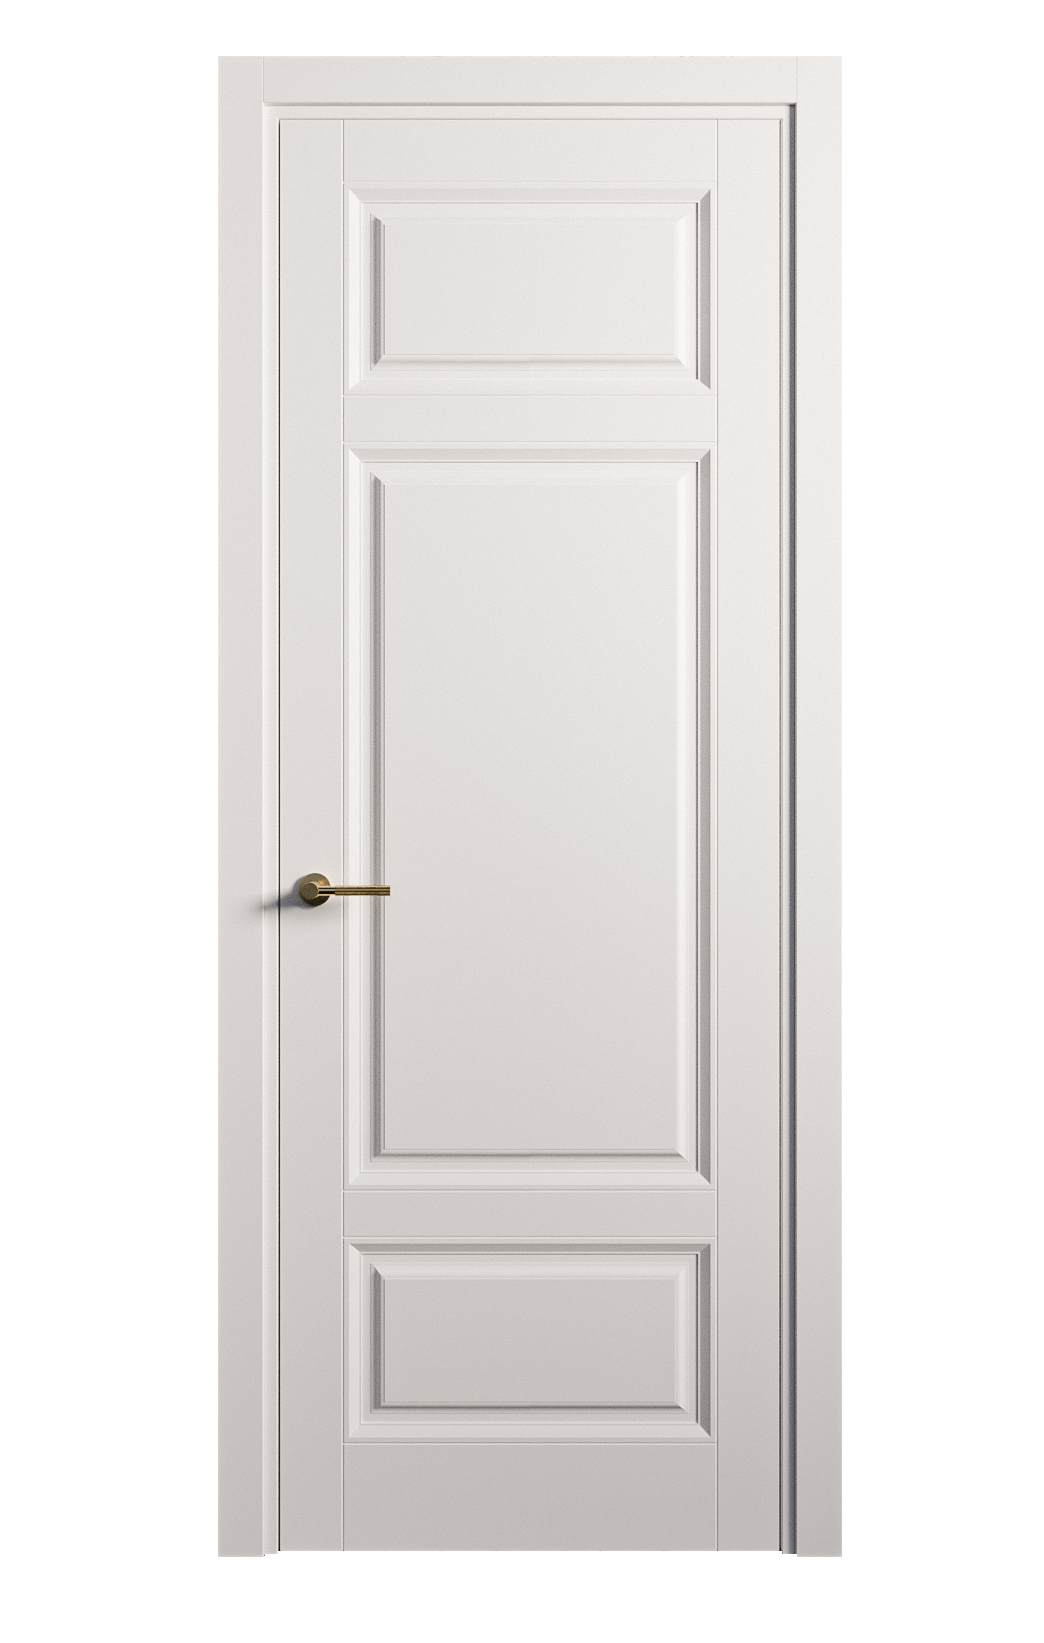 Межкомнатная дверь Venezia-5 глухая эмаль ral 9003 25909